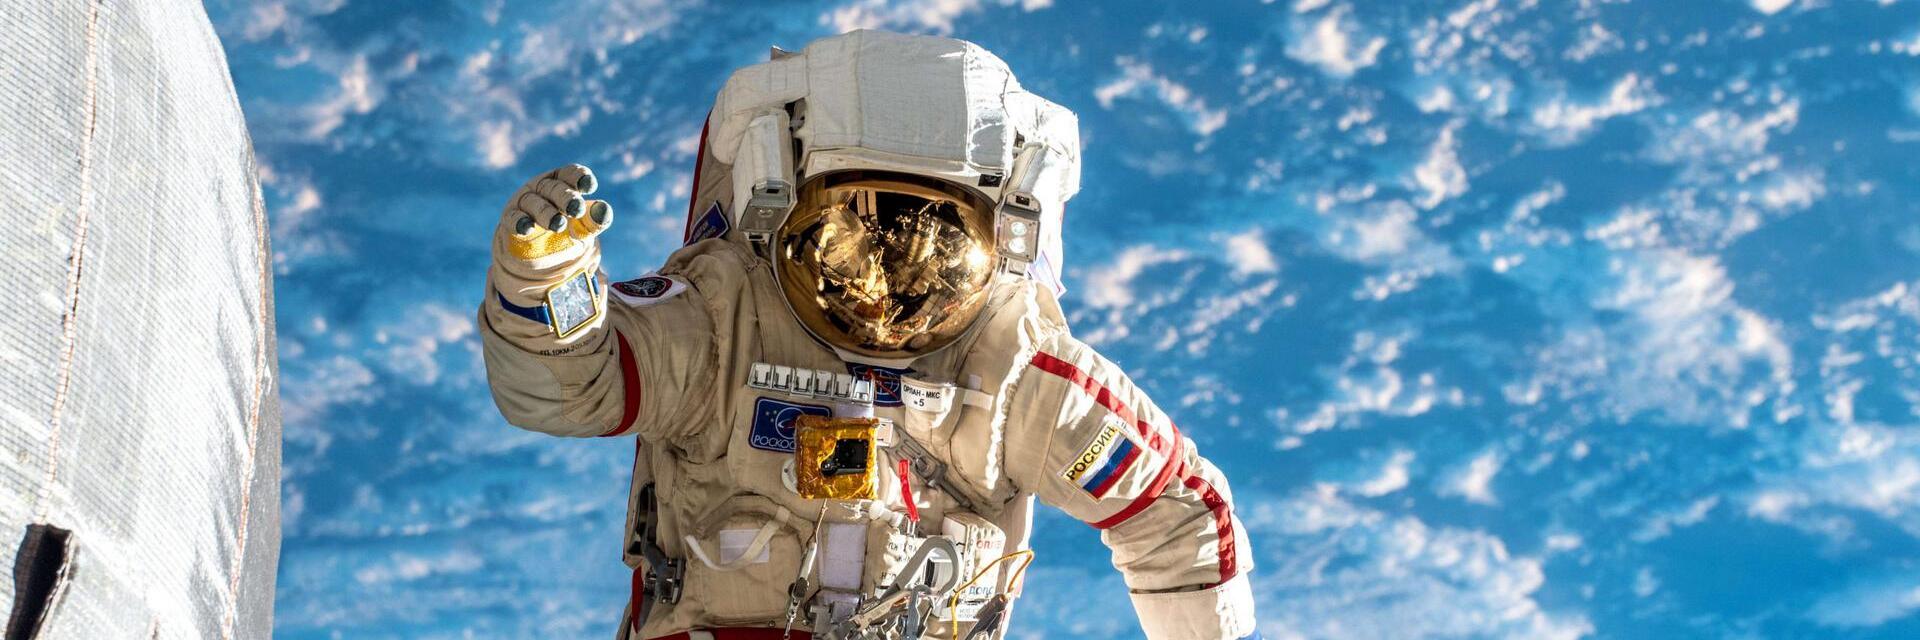 космонавт в открытом космосе фото